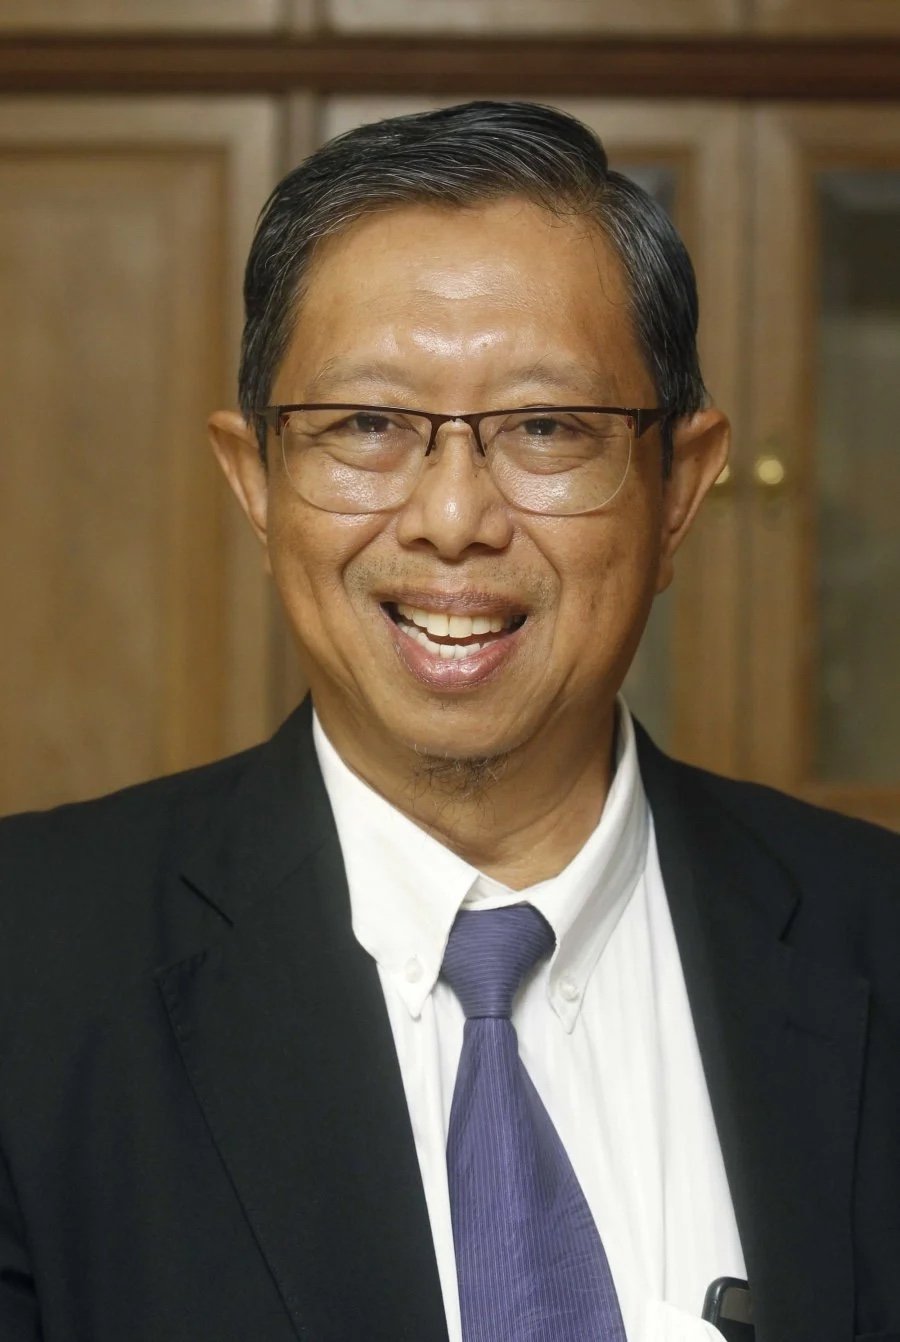 莫哈末尼萨是该党在霹雳州唯一一位中选的州议员。